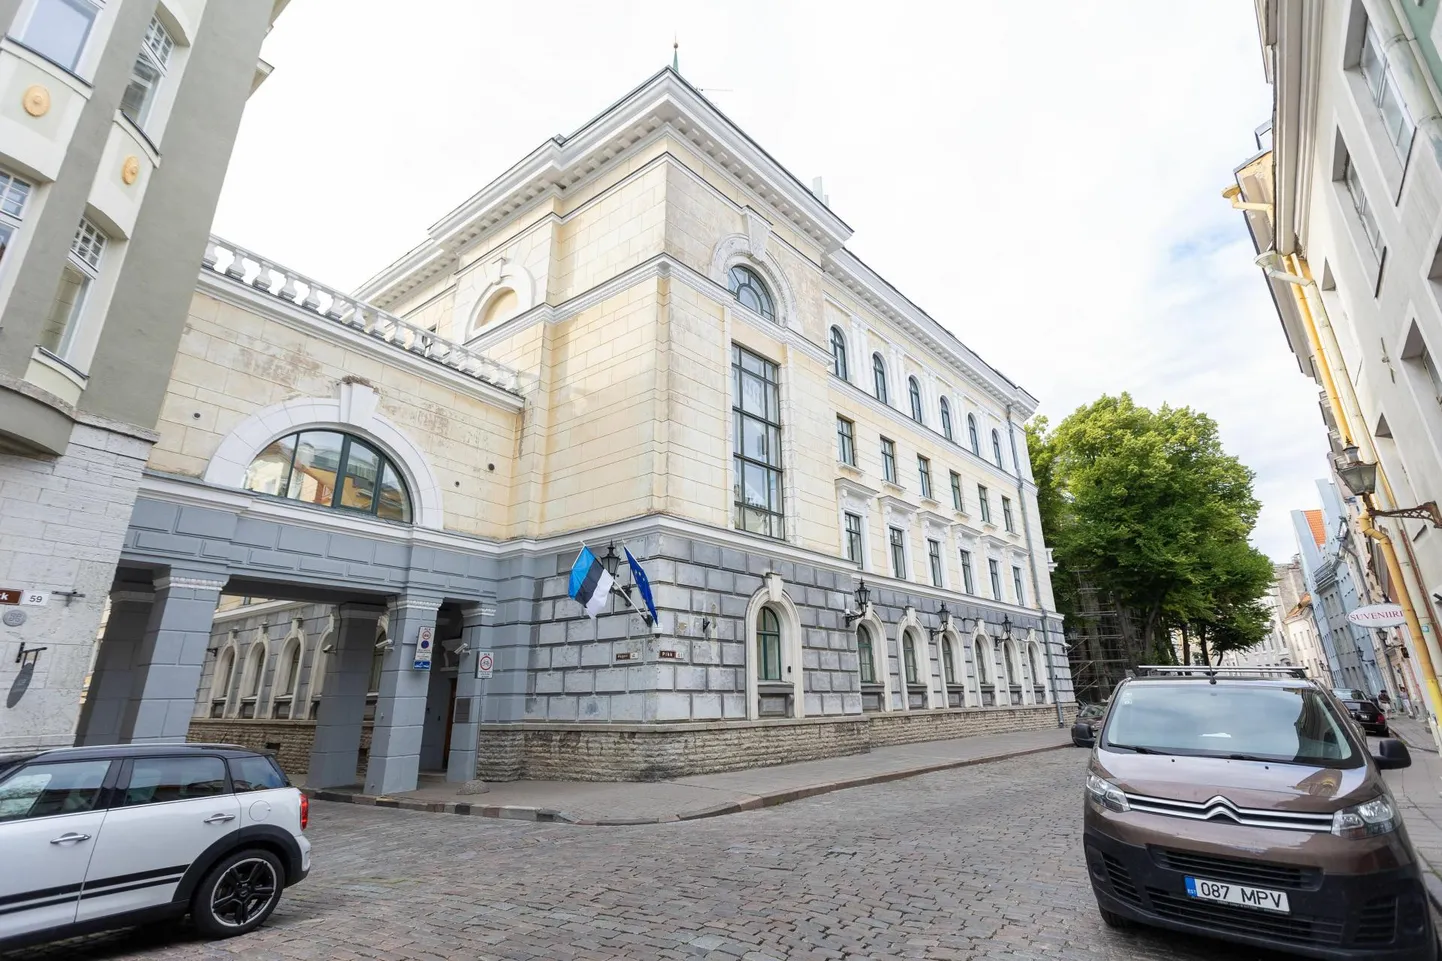 Планируется перенести Министерство внутренних дел из Старого города. По мнению города Таллинна, опустевший дом может стать, например, доходным и сдаваться внаем поквартирно.